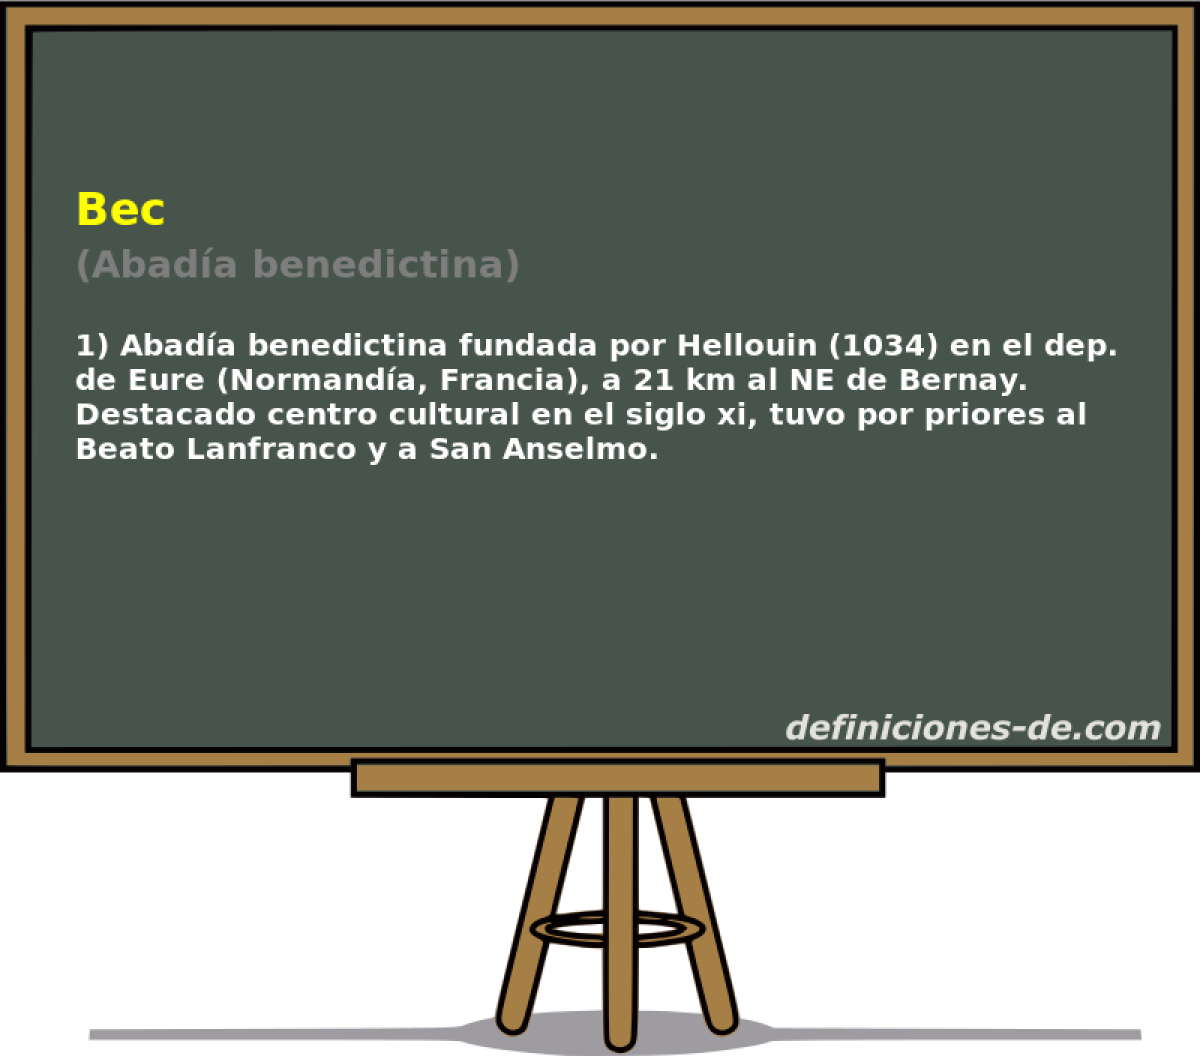 Bec (Abada benedictina)